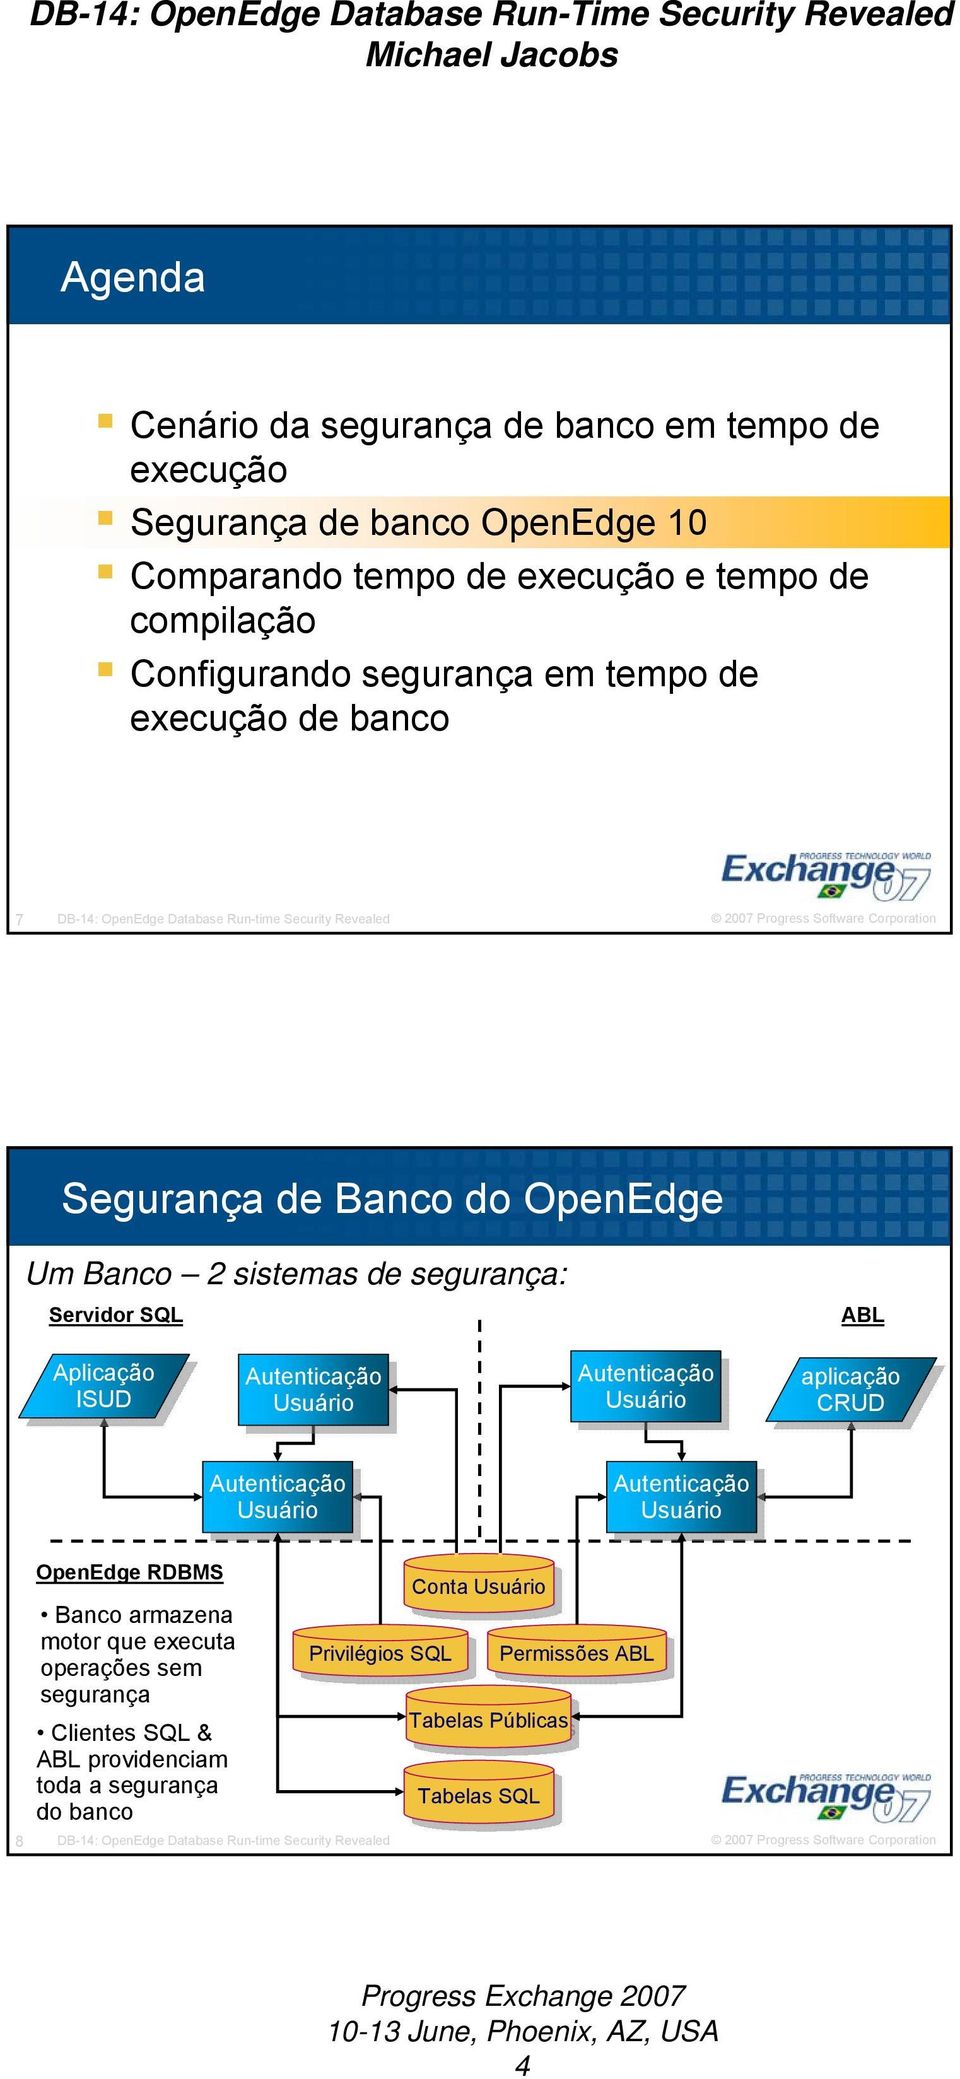 Usuário Usuário aplicação CRUD CRUD Usuário Usuário OpenEdge RDBMS Banco armazena motor que executa operações sem segurança Clientes SQL & ABL providenciam toda a segurança do